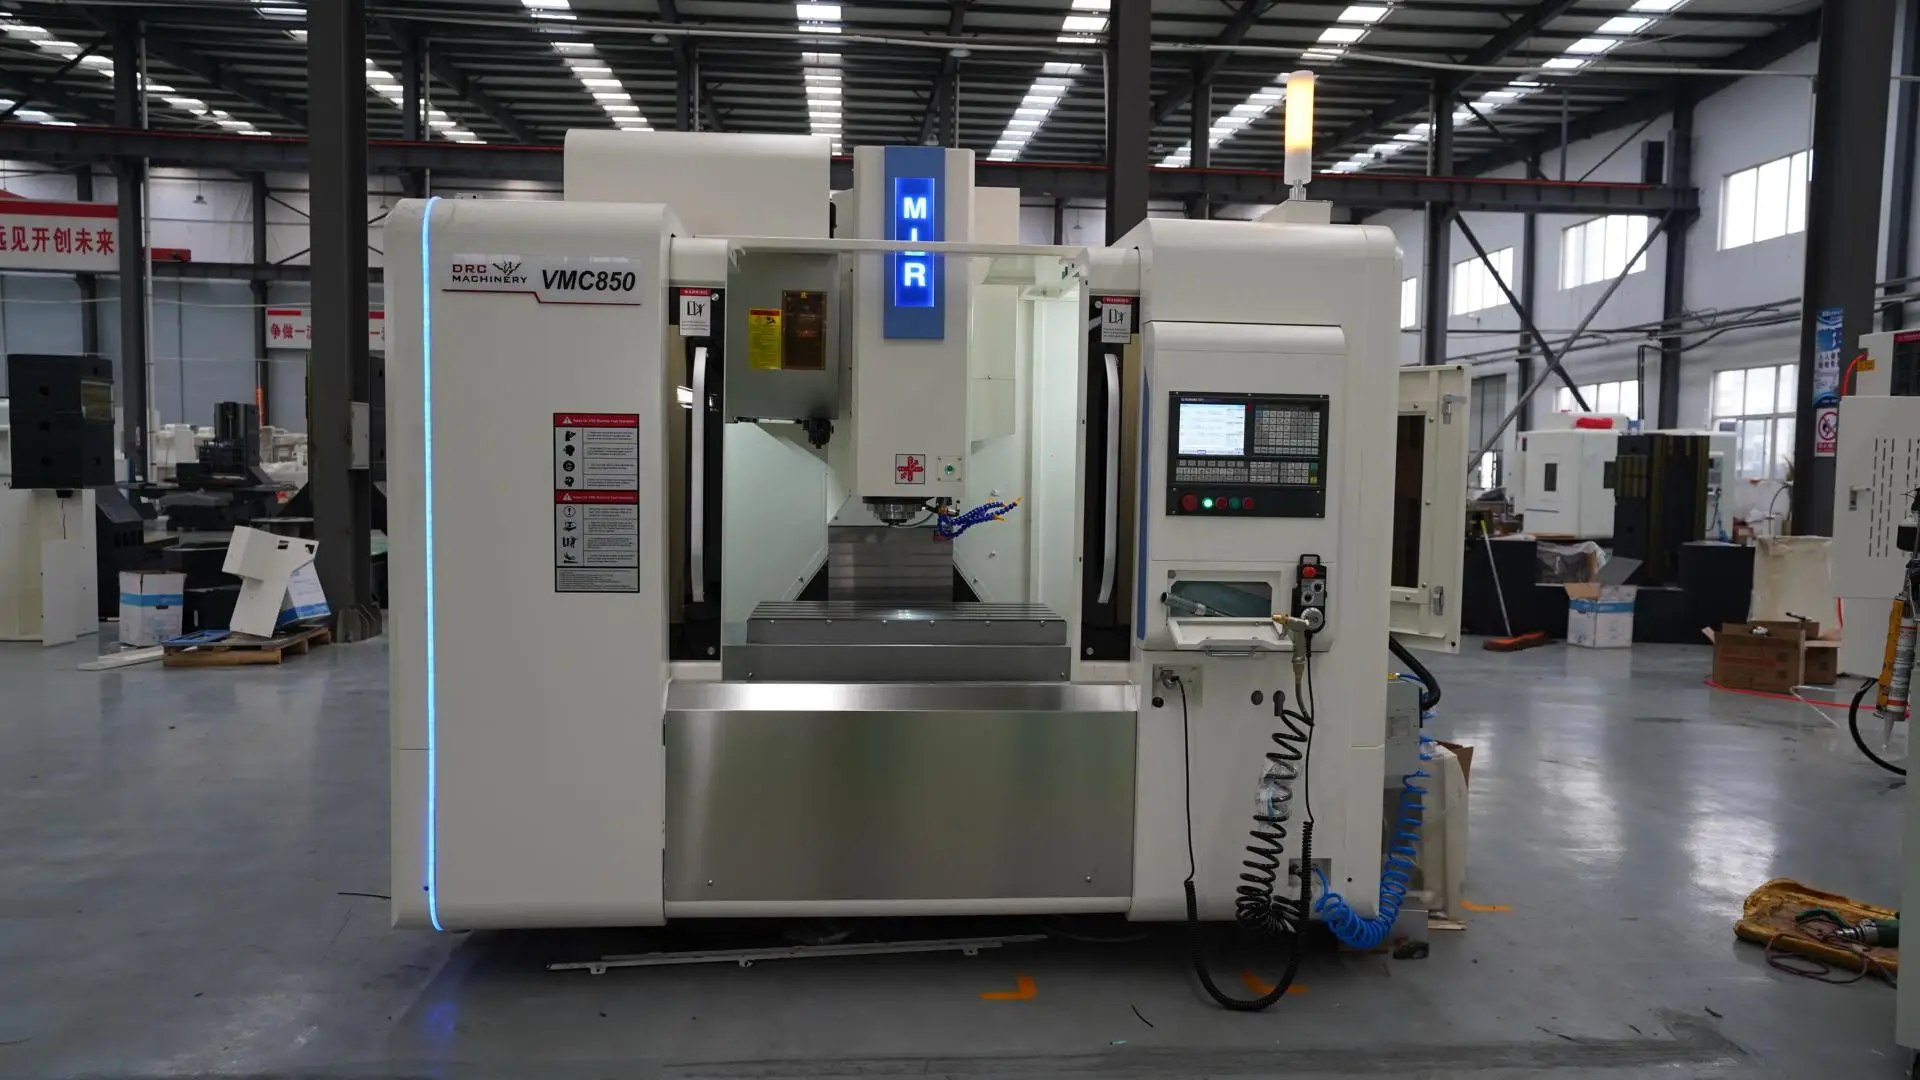 China metal cnc machine center vmc850 VMC850  Siemens system vertical machine center